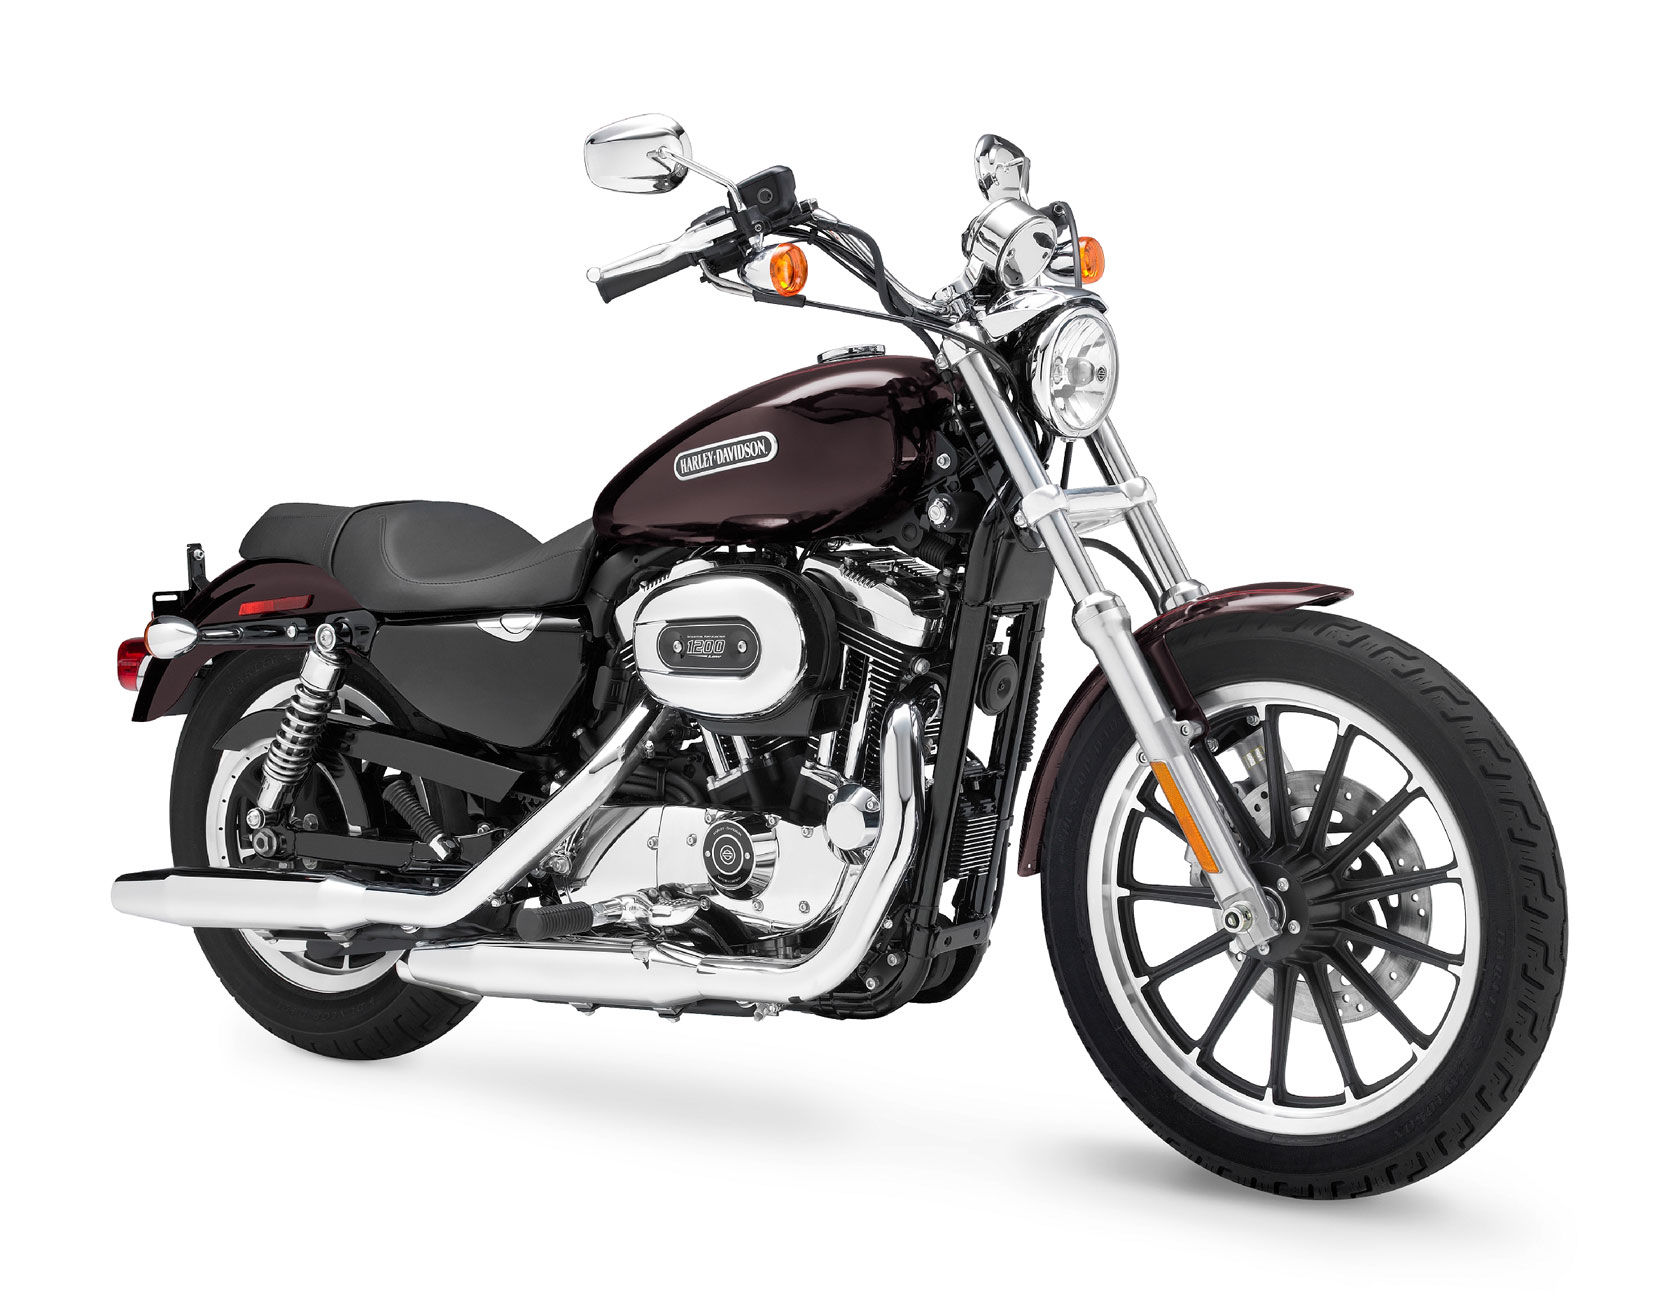 Harley-Davidson XL 1200 Low XL 1200L 1200 Low photo - 6